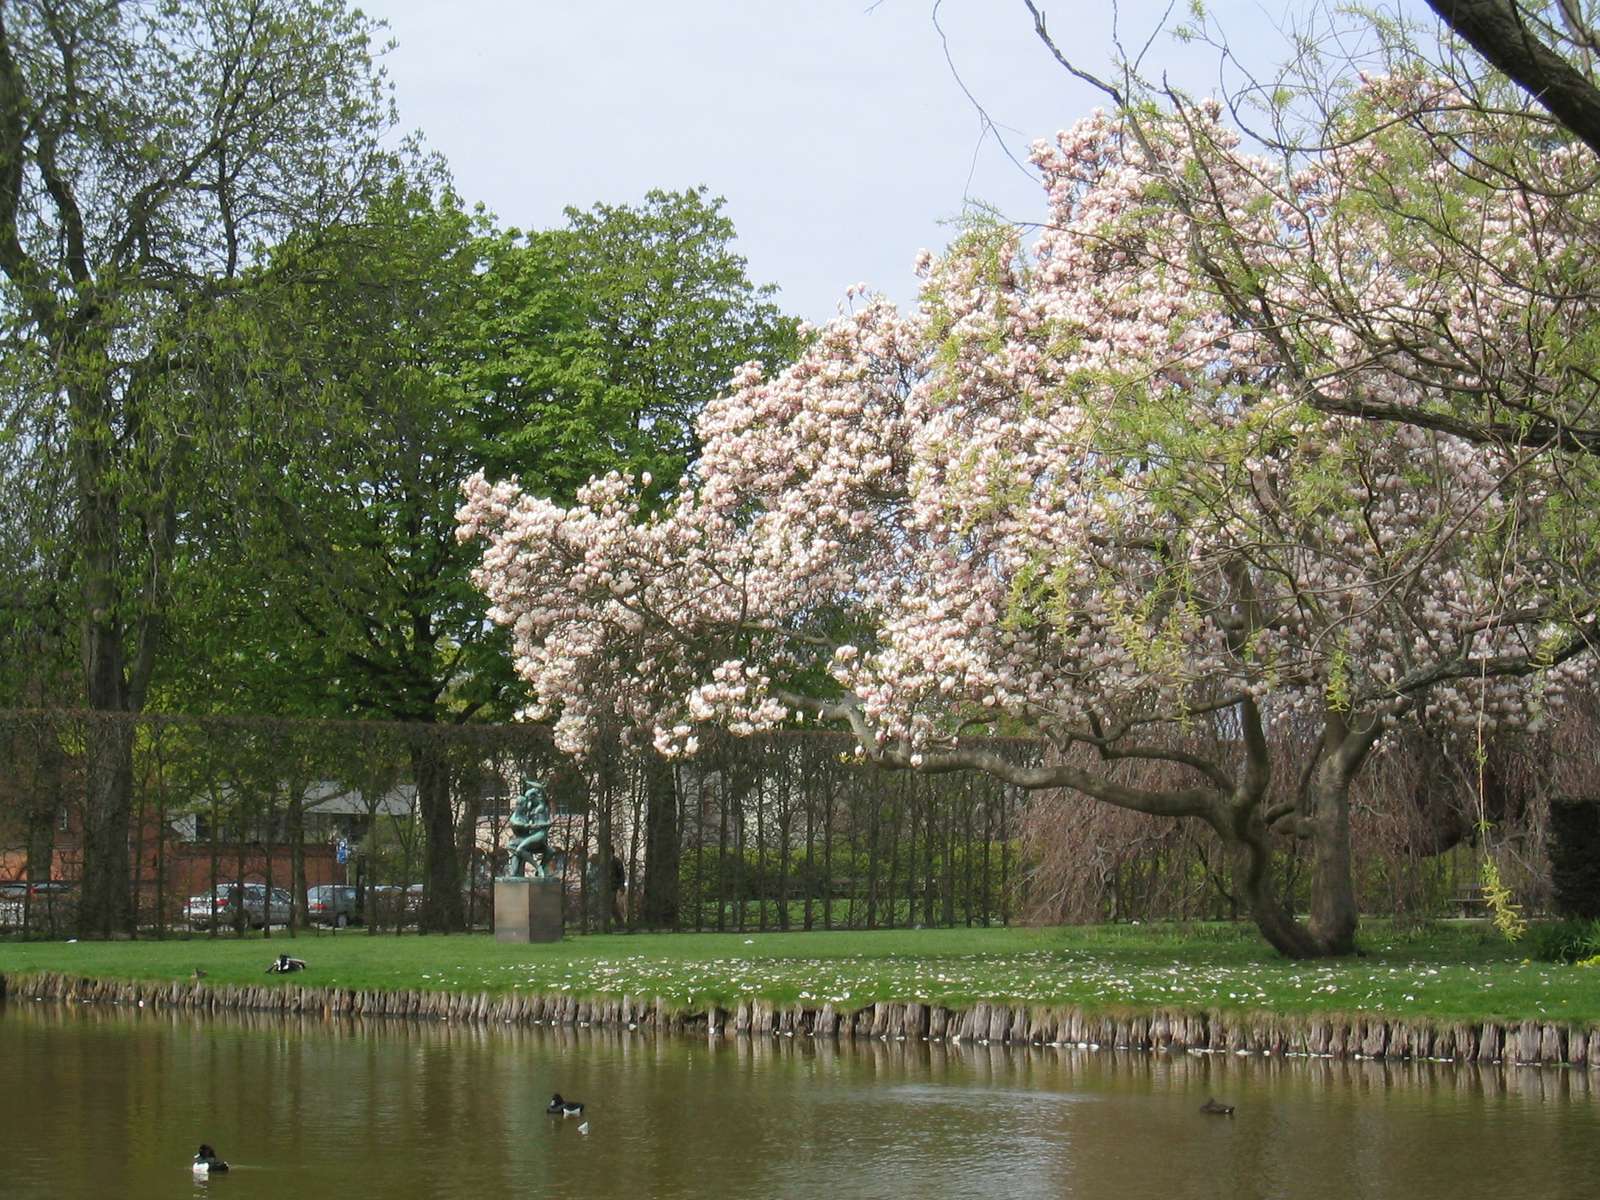 ducks in the park magnolia